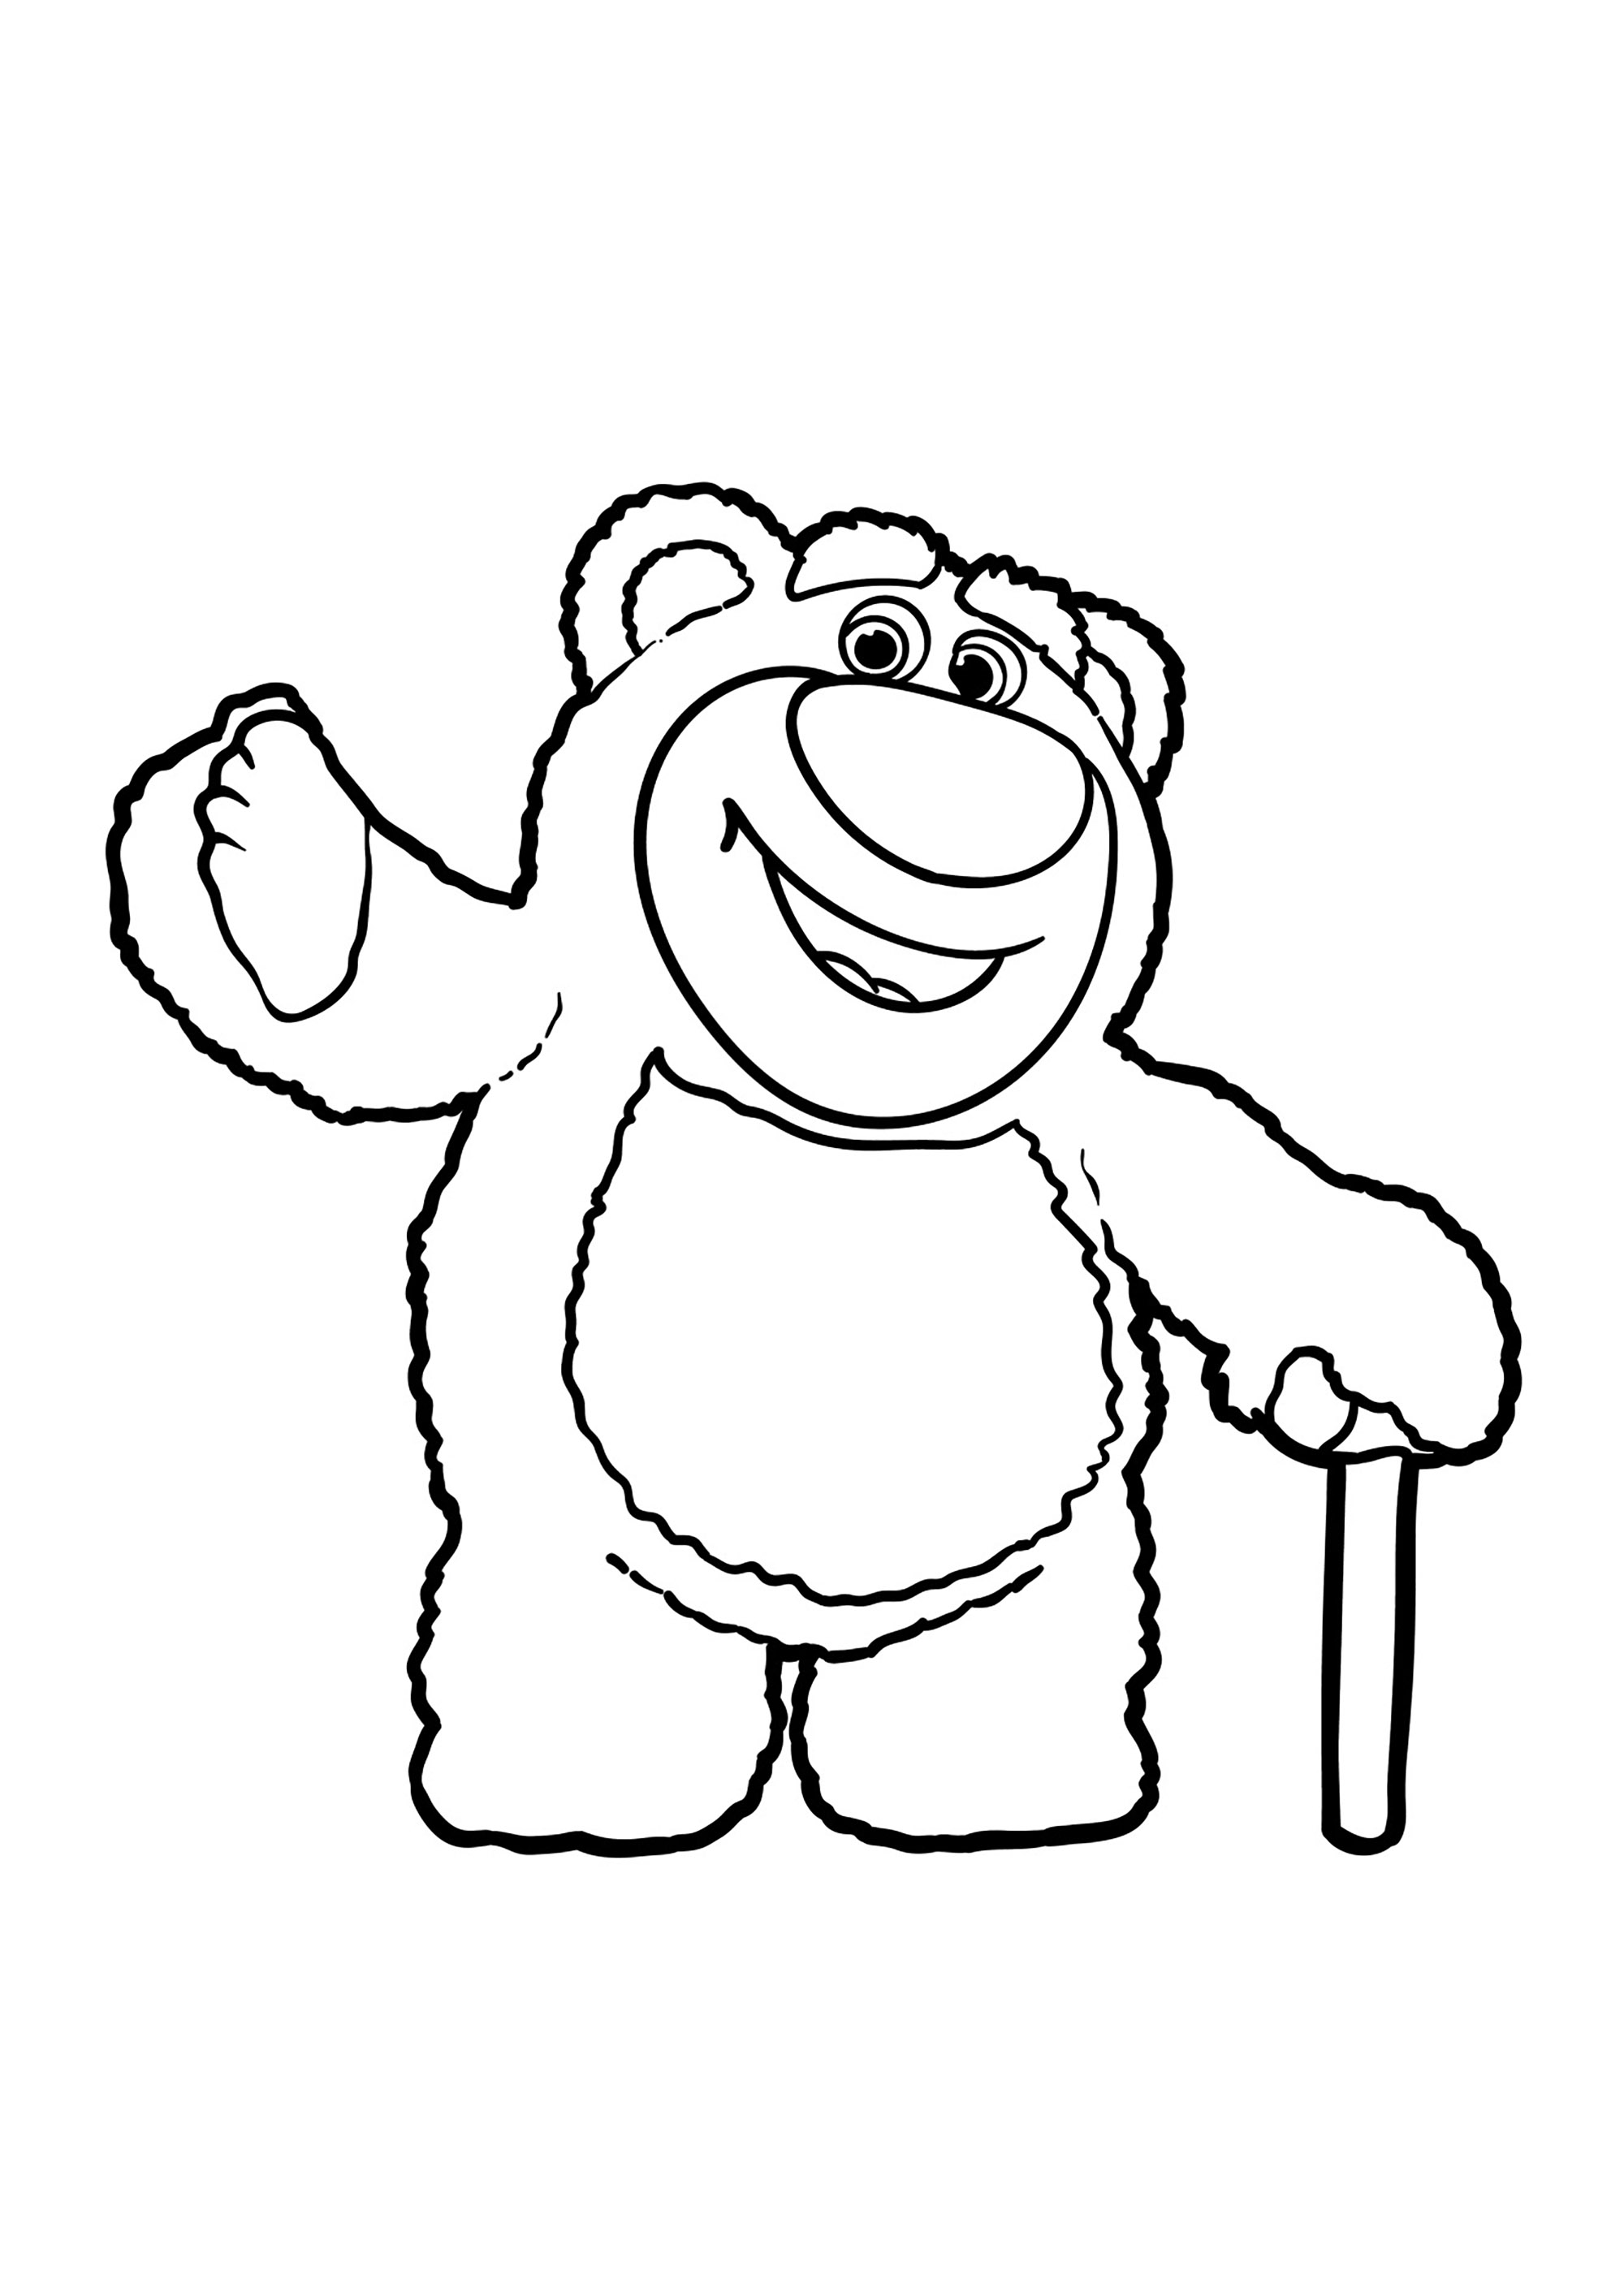 Lotso, el malvado oso rosa de Toy Story 3. No dudes en añadir detalles adicionales al oso, como rayas, manchas o dibujos, para dar un toque personal a tu creación.